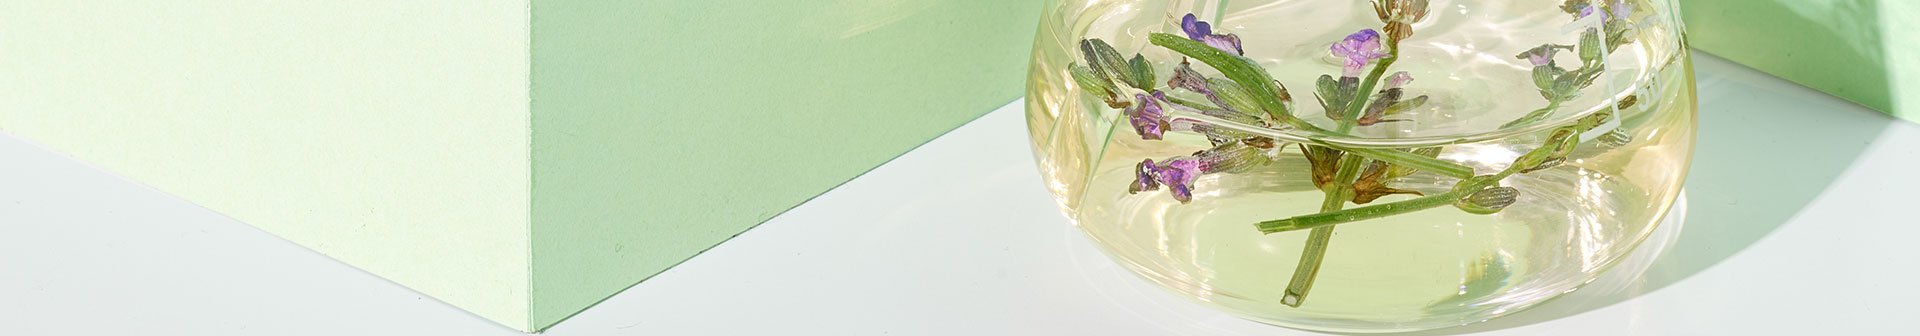 Lavendelblüten schwimmen in mit Öl gefüllten Glas